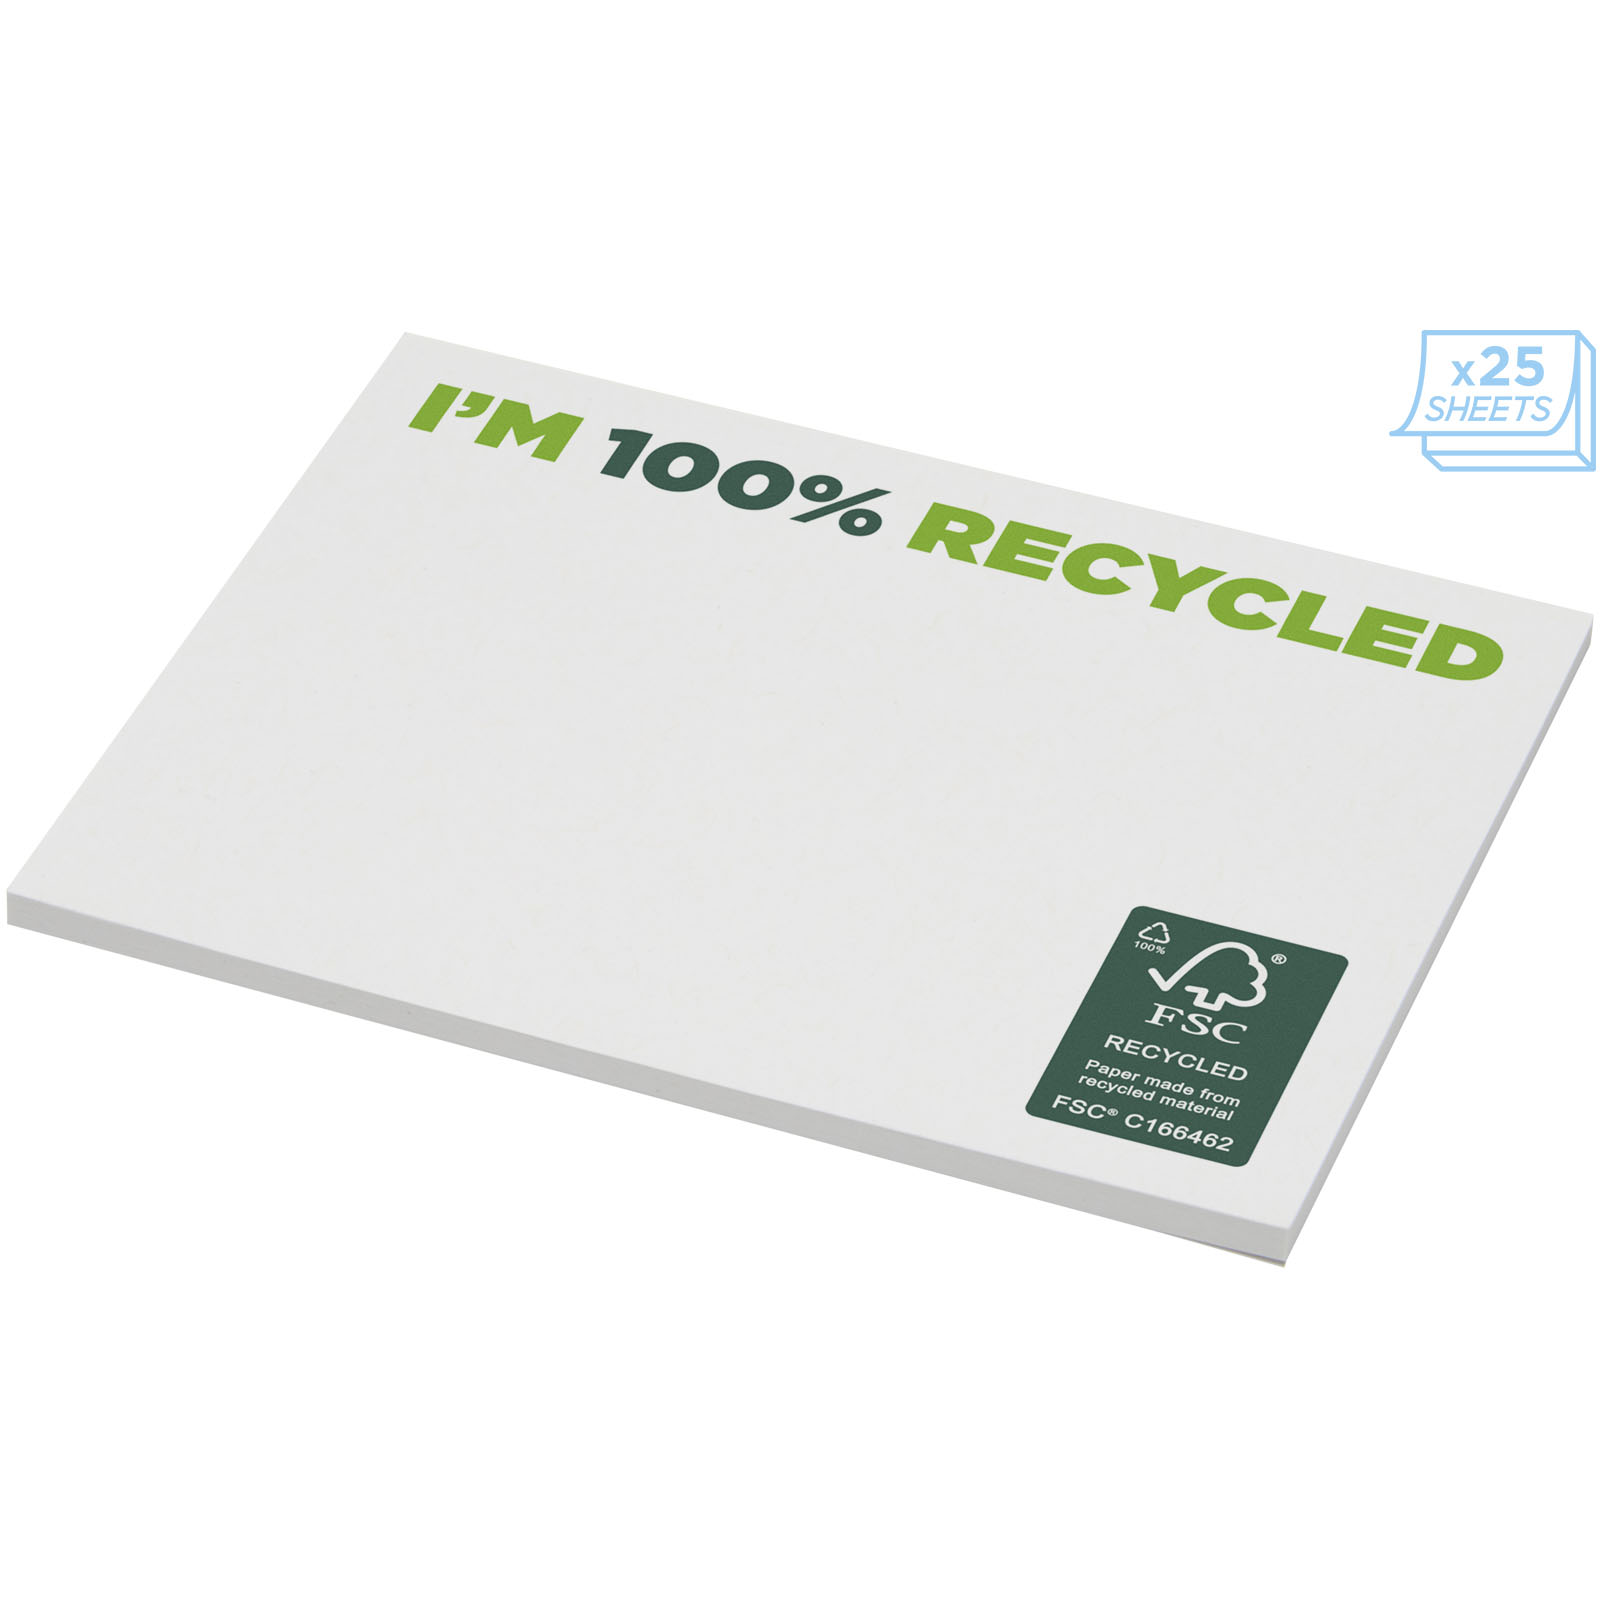 Notes adhésives publicitaires - Mémos autocollants recyclés 100 x 75 mm Sticky-Mate® - 2